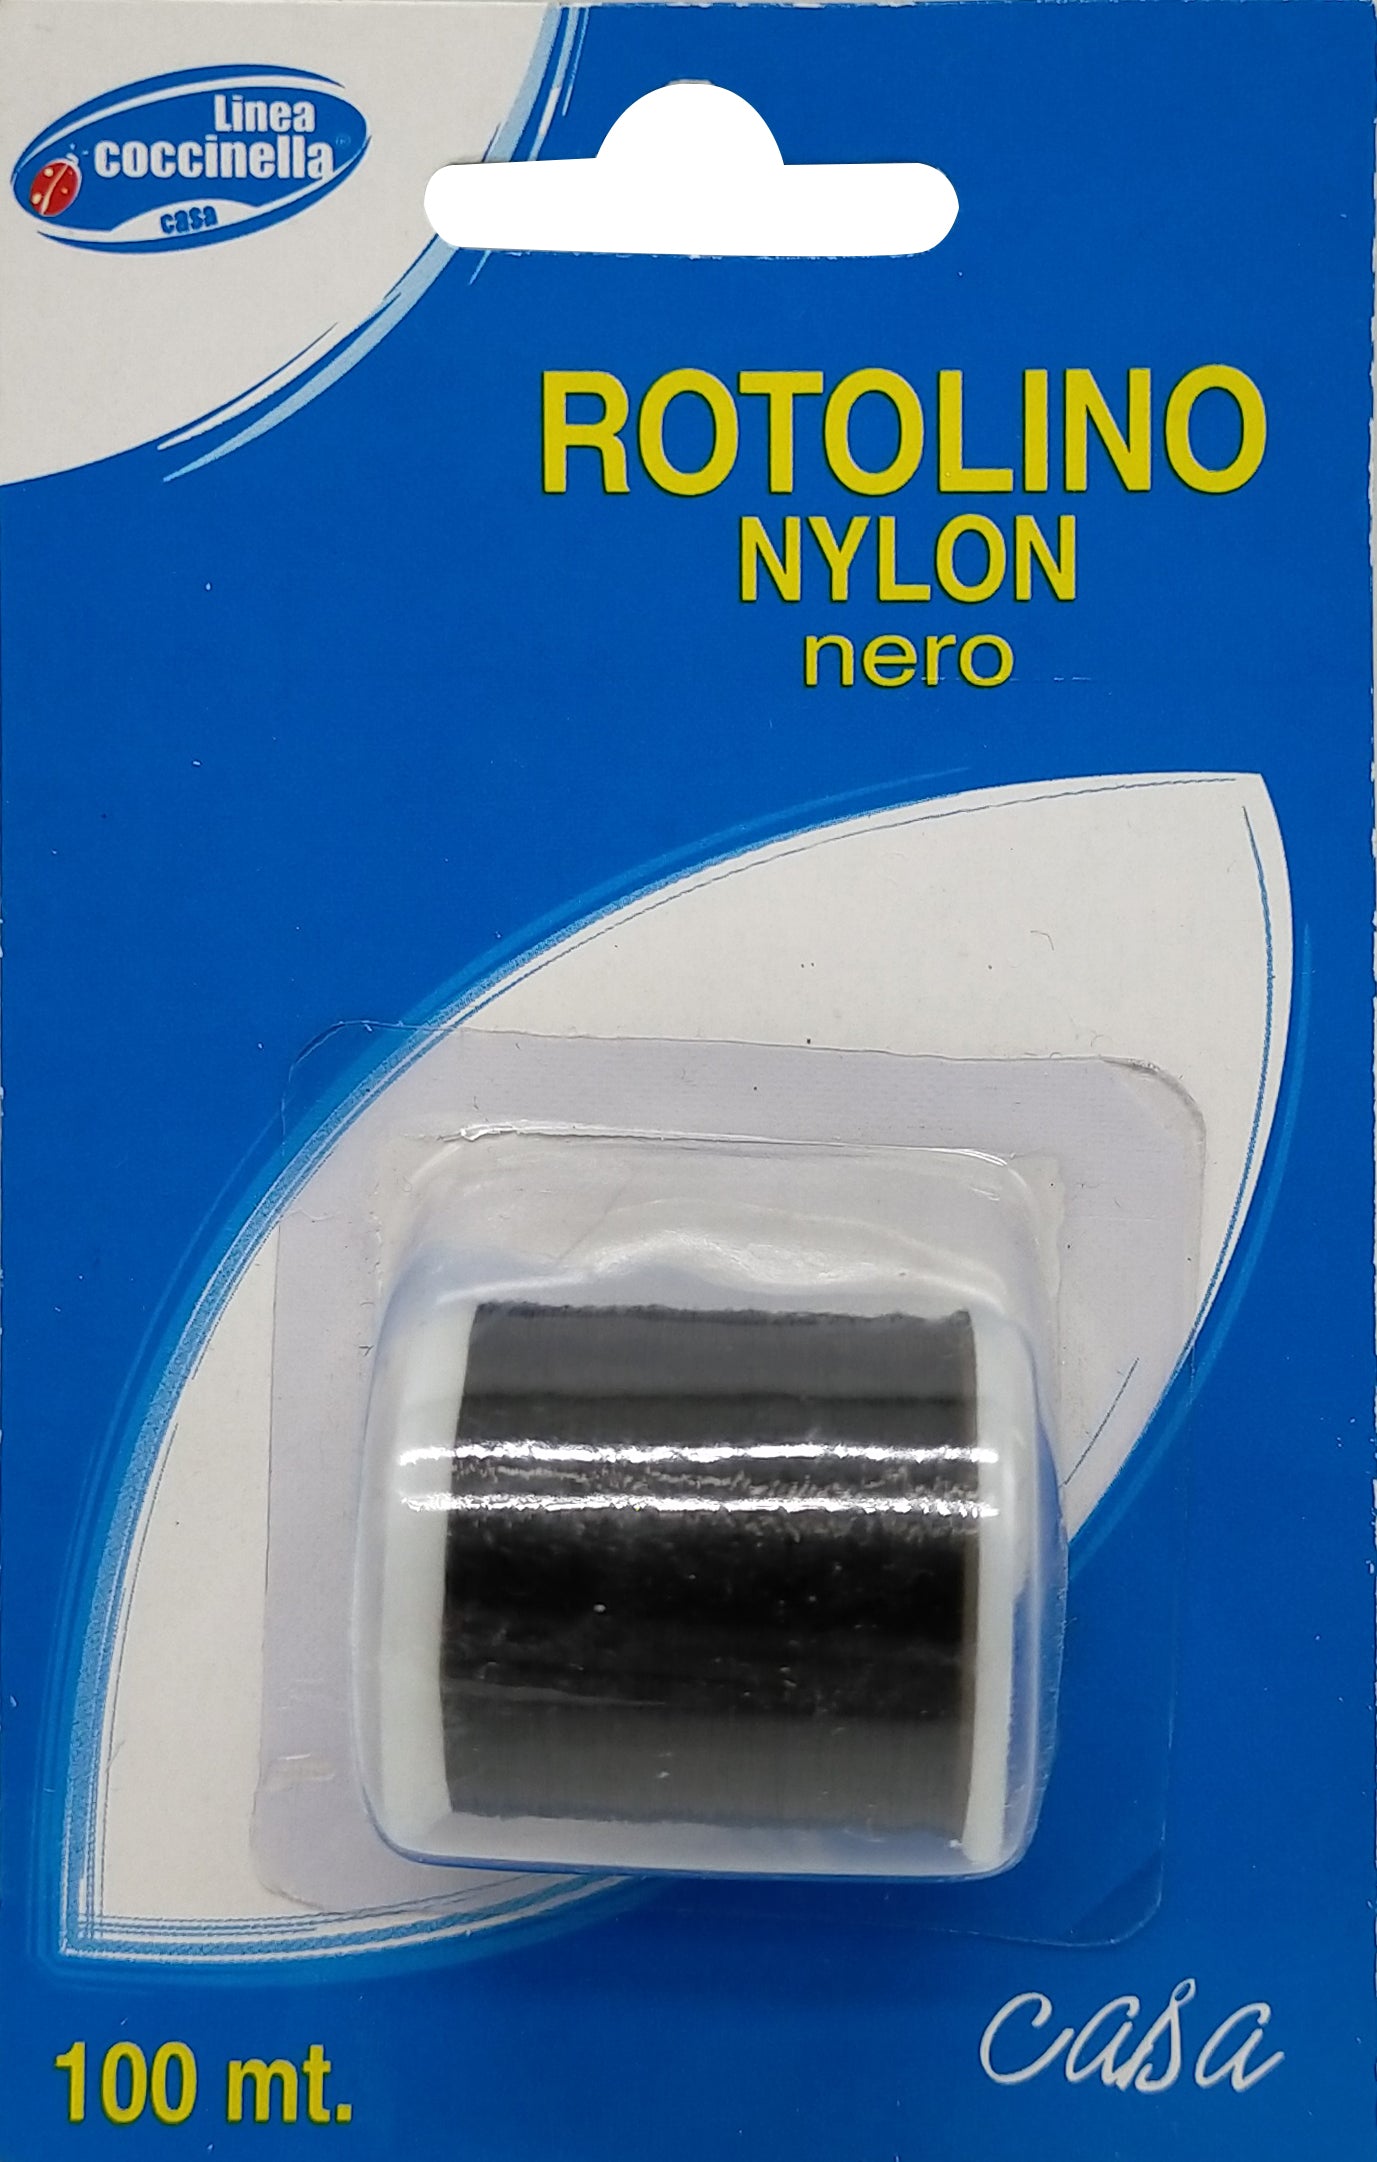 Rotolino Nylon Nero Casa